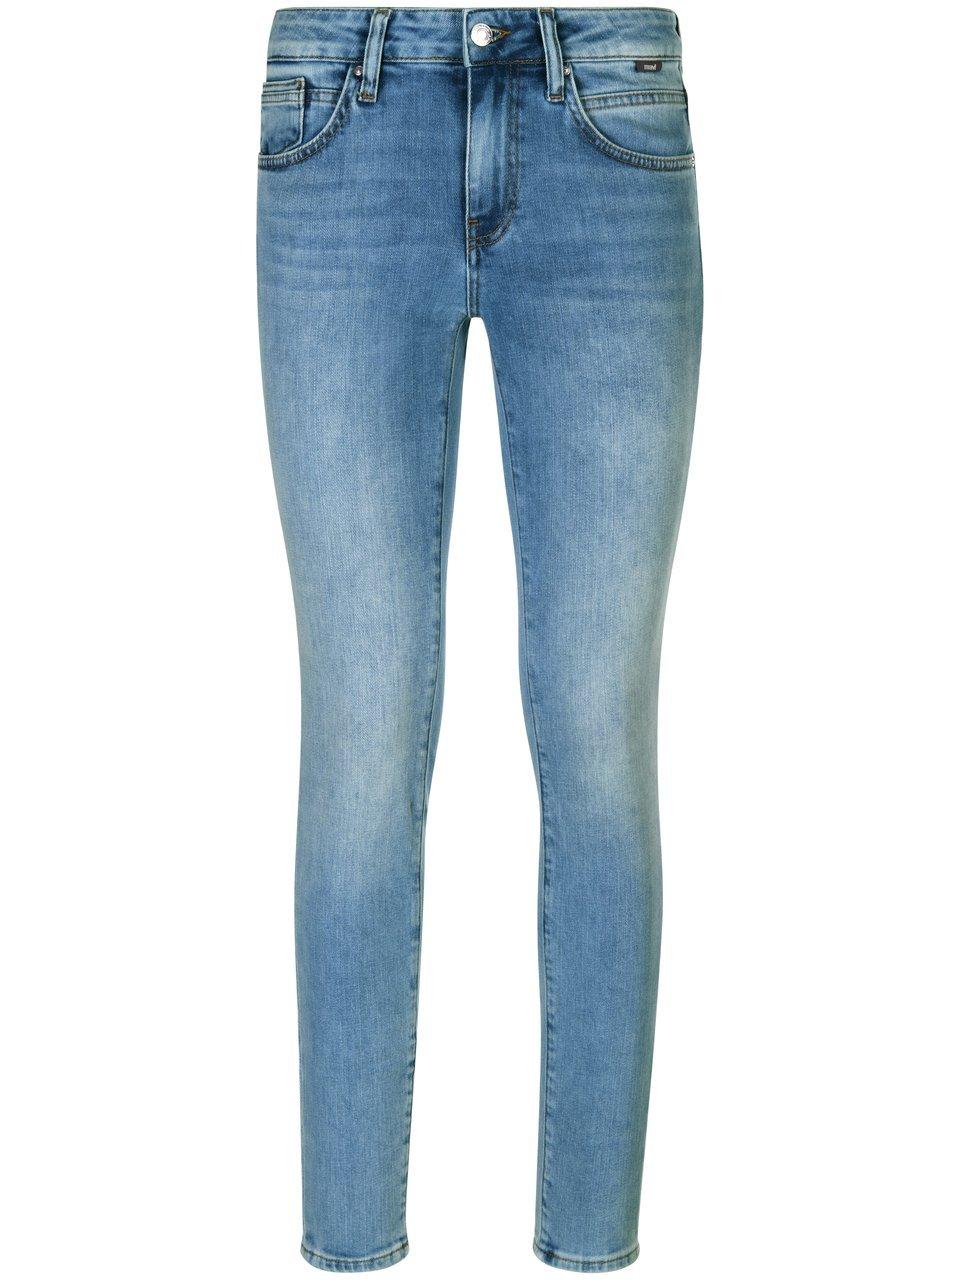 MAVI - Jeans Adriana in inchlengte 30